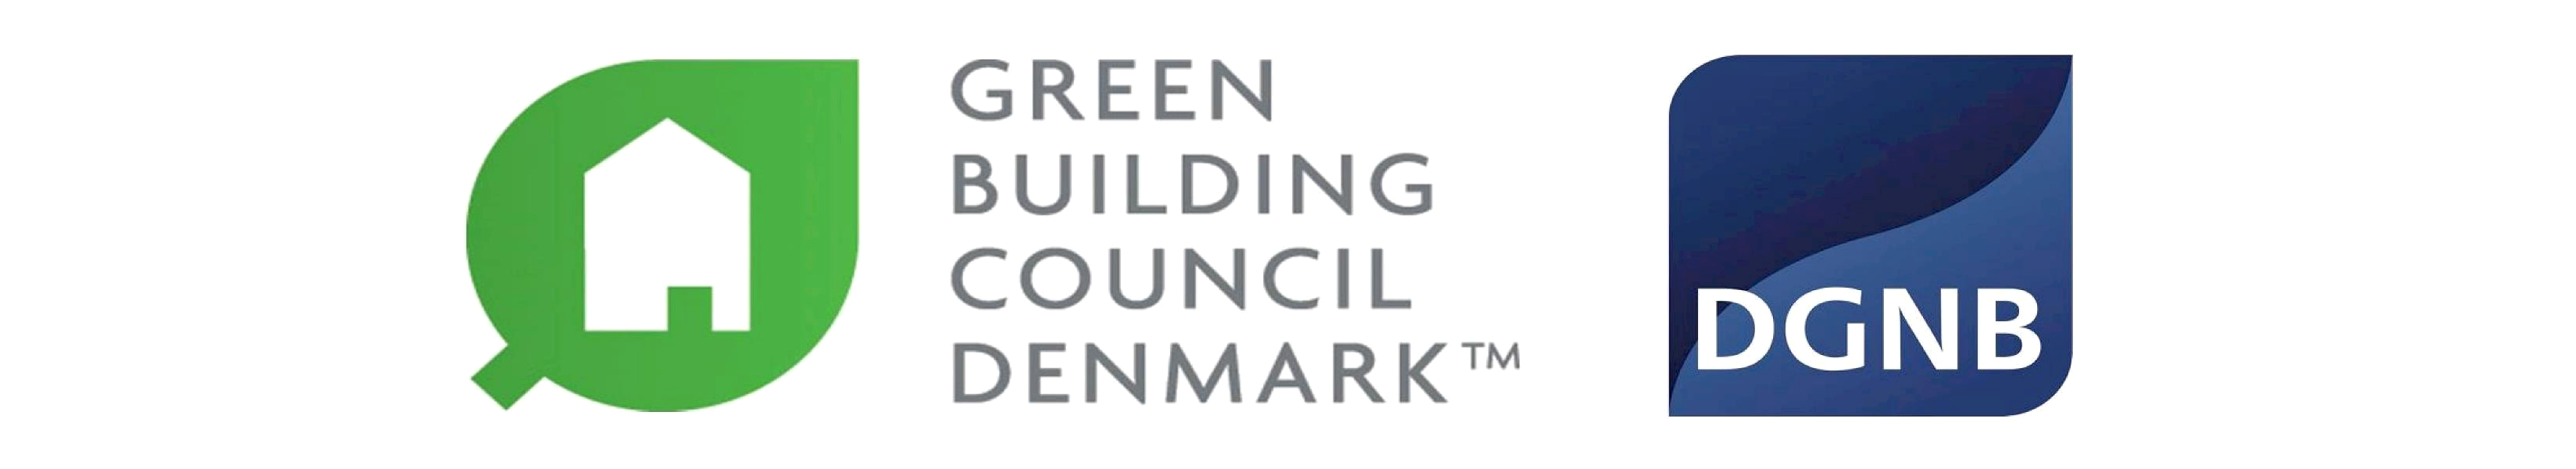 Gottfred Petersen A/S er blevet medlem af Green Building Council Denmark